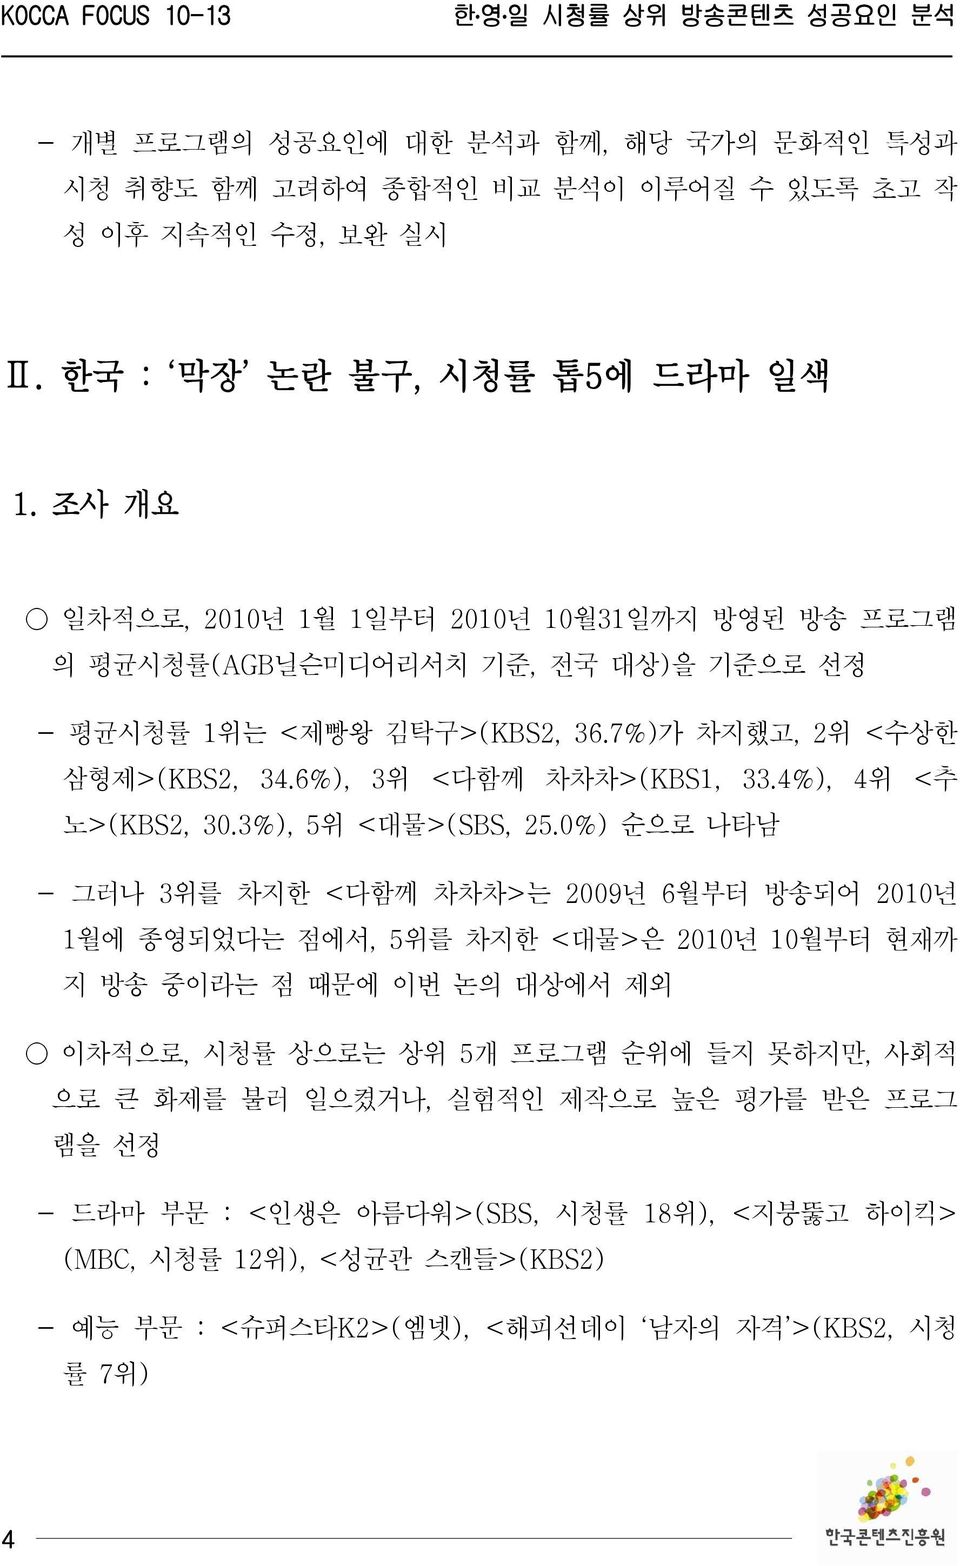 6%), 3위 <다함께 차차차>(KBS1, 33.4%), 4위 <추 노>(KBS2, 30.3%), 5위 <대물>(SBS, 25.